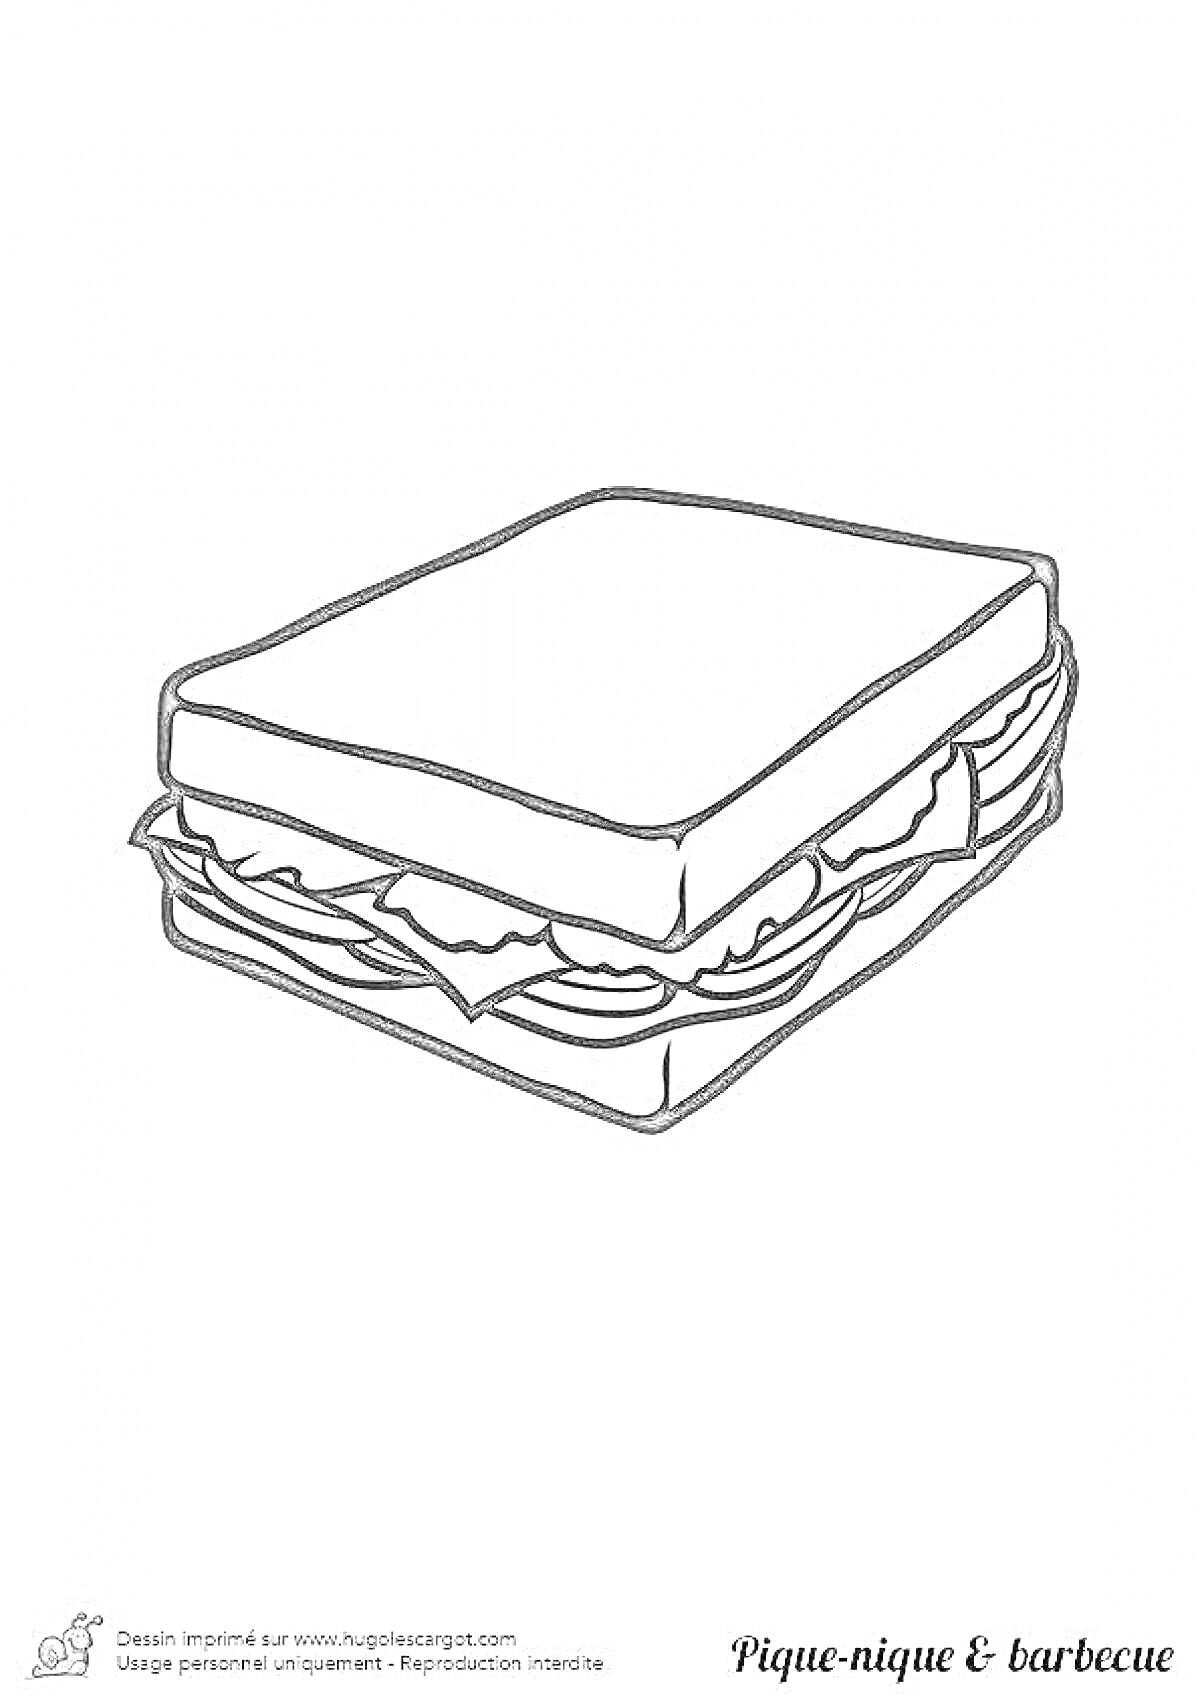 Раскраска Сэндвич с листьями салата и колбасой между двумя ломтиками хлеба